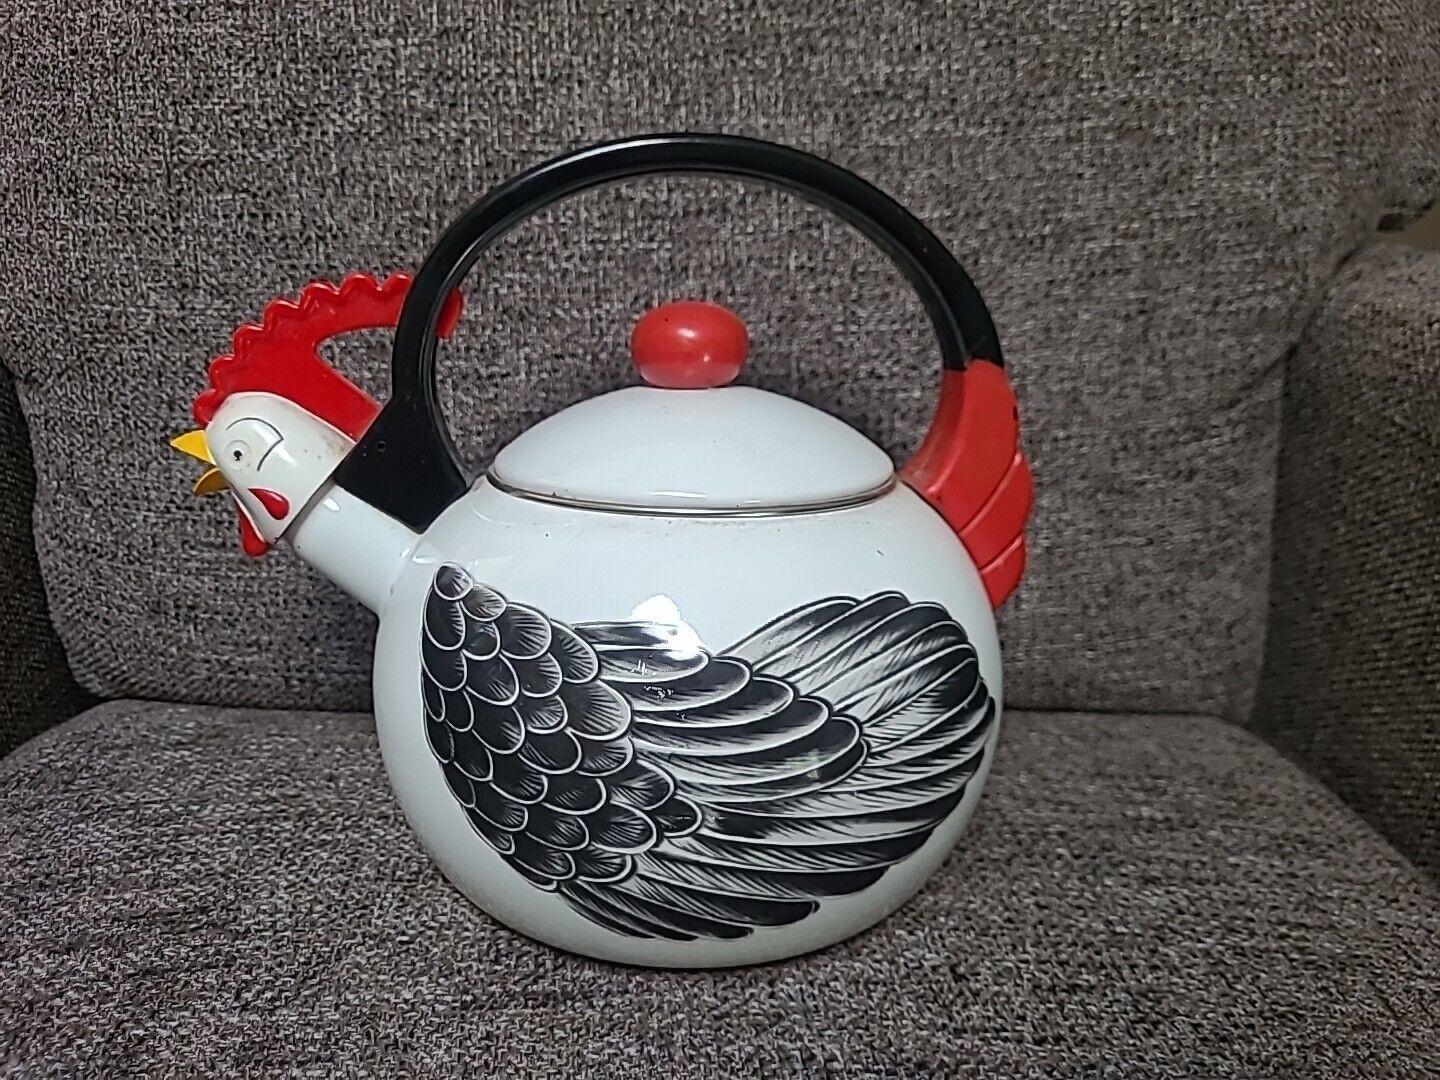 M. Kamenstein, Inc 1986 Enamel Rooster/Chicken Teapot Tea Kettle